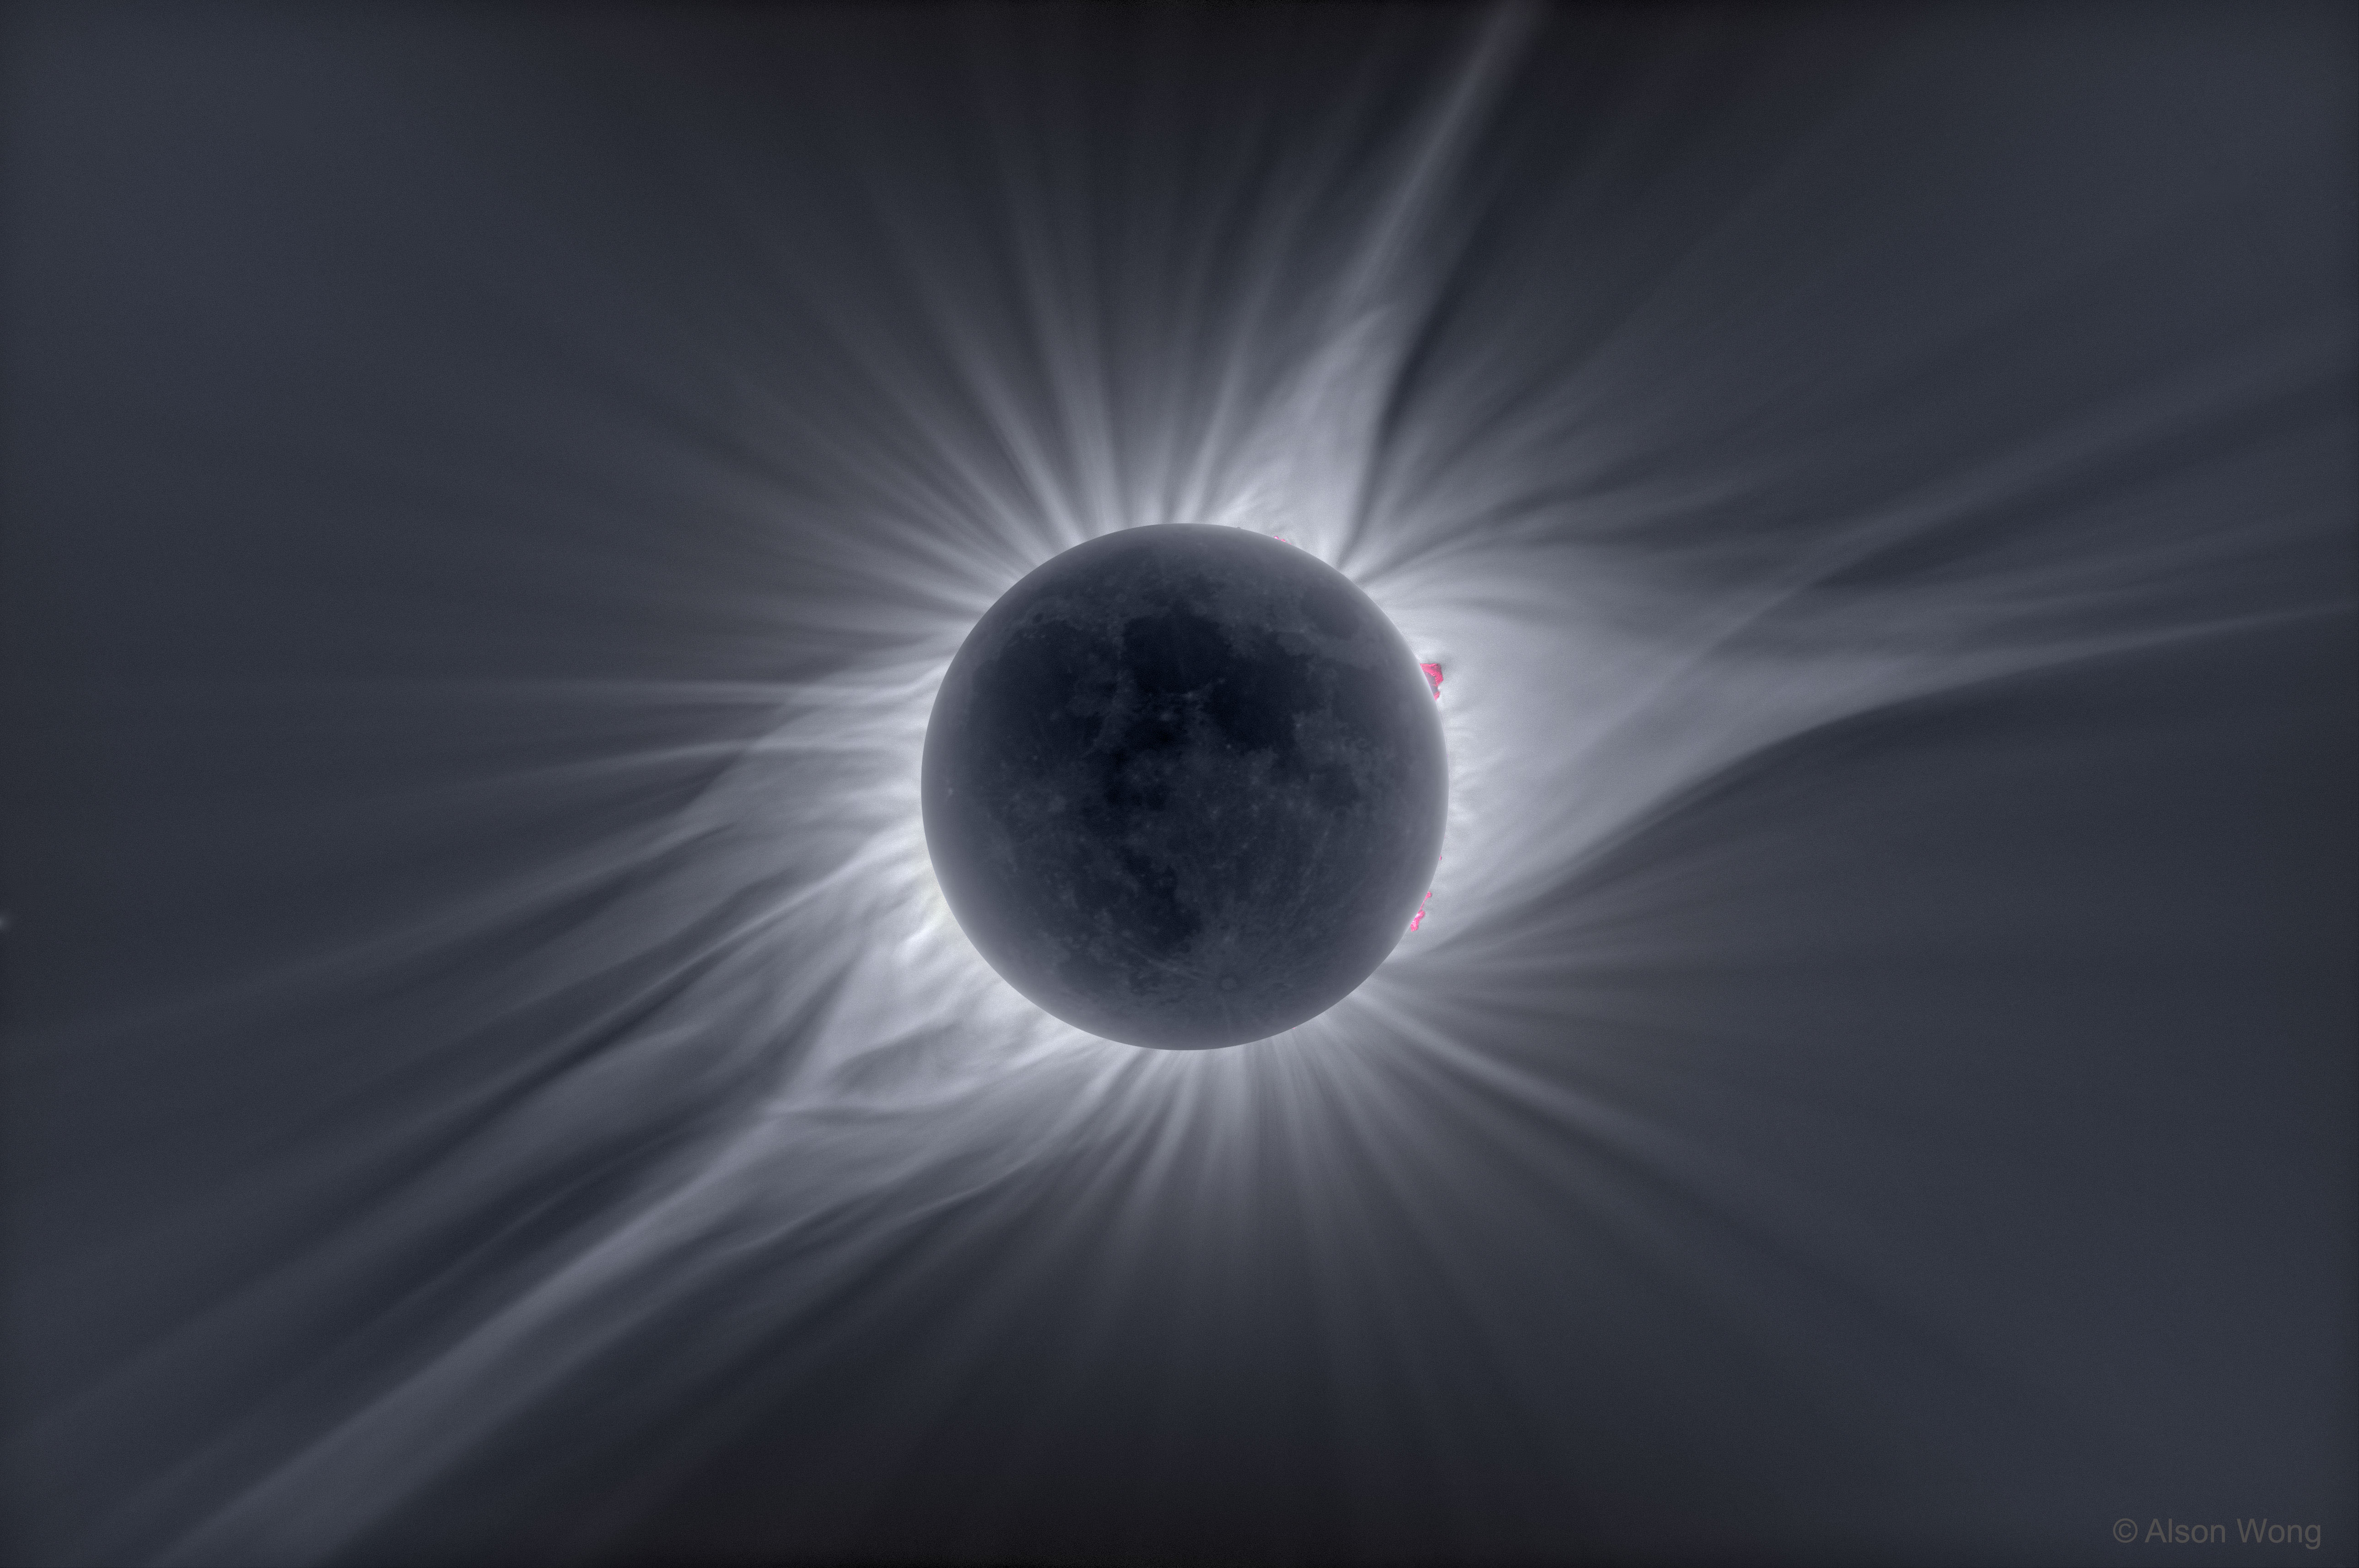 Mitten im Bild ist der schwach beleuchtete Mond bei einer totalen Sonnenfinsternis von den breit gefächerten Strahlen der Sonnenkorona umgeben. Am Rand ragen einige rosarote Protuberanzen auf.